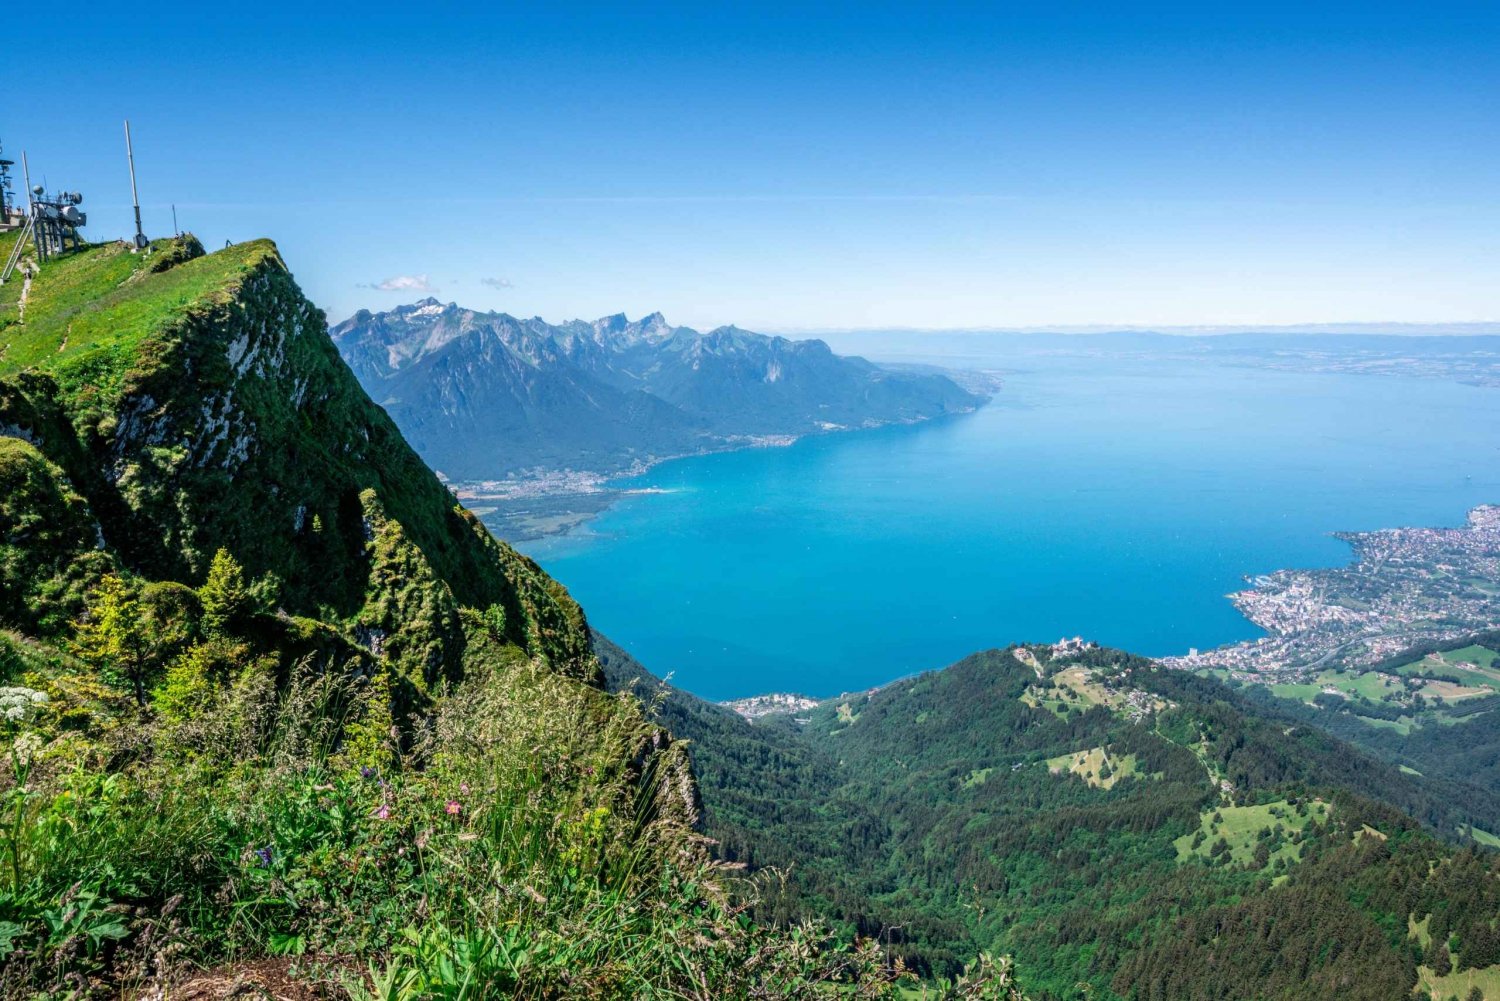 Montreux til Rochers-de-Naye: Billet til alpeeventyr